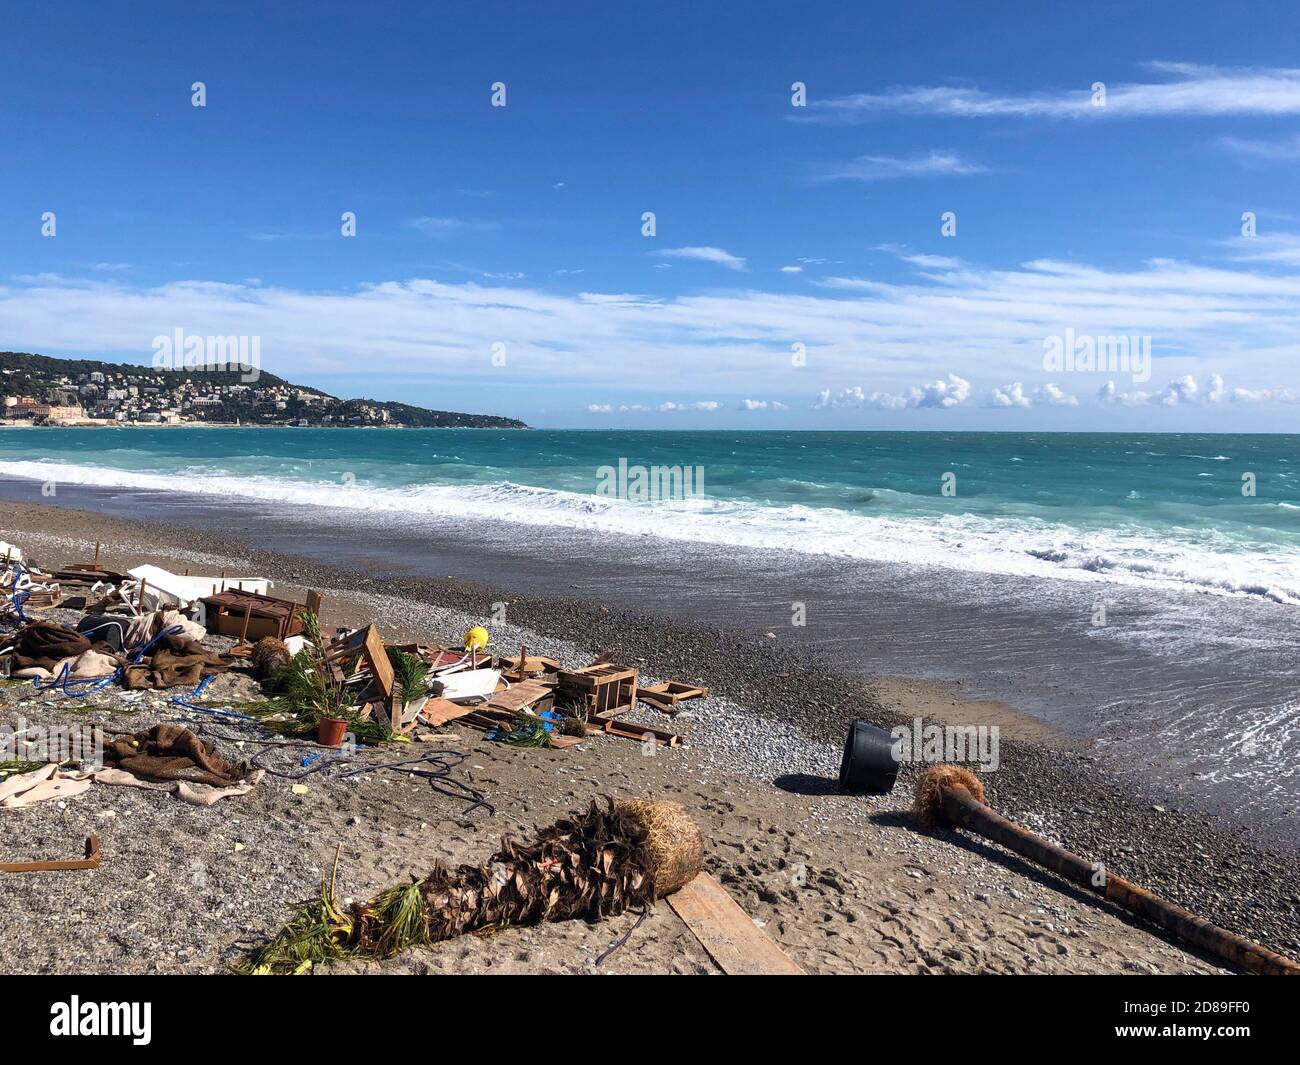 Épave sur la plage après une tempête, Nice, Alpes-Maritimes, France Banque D'Images